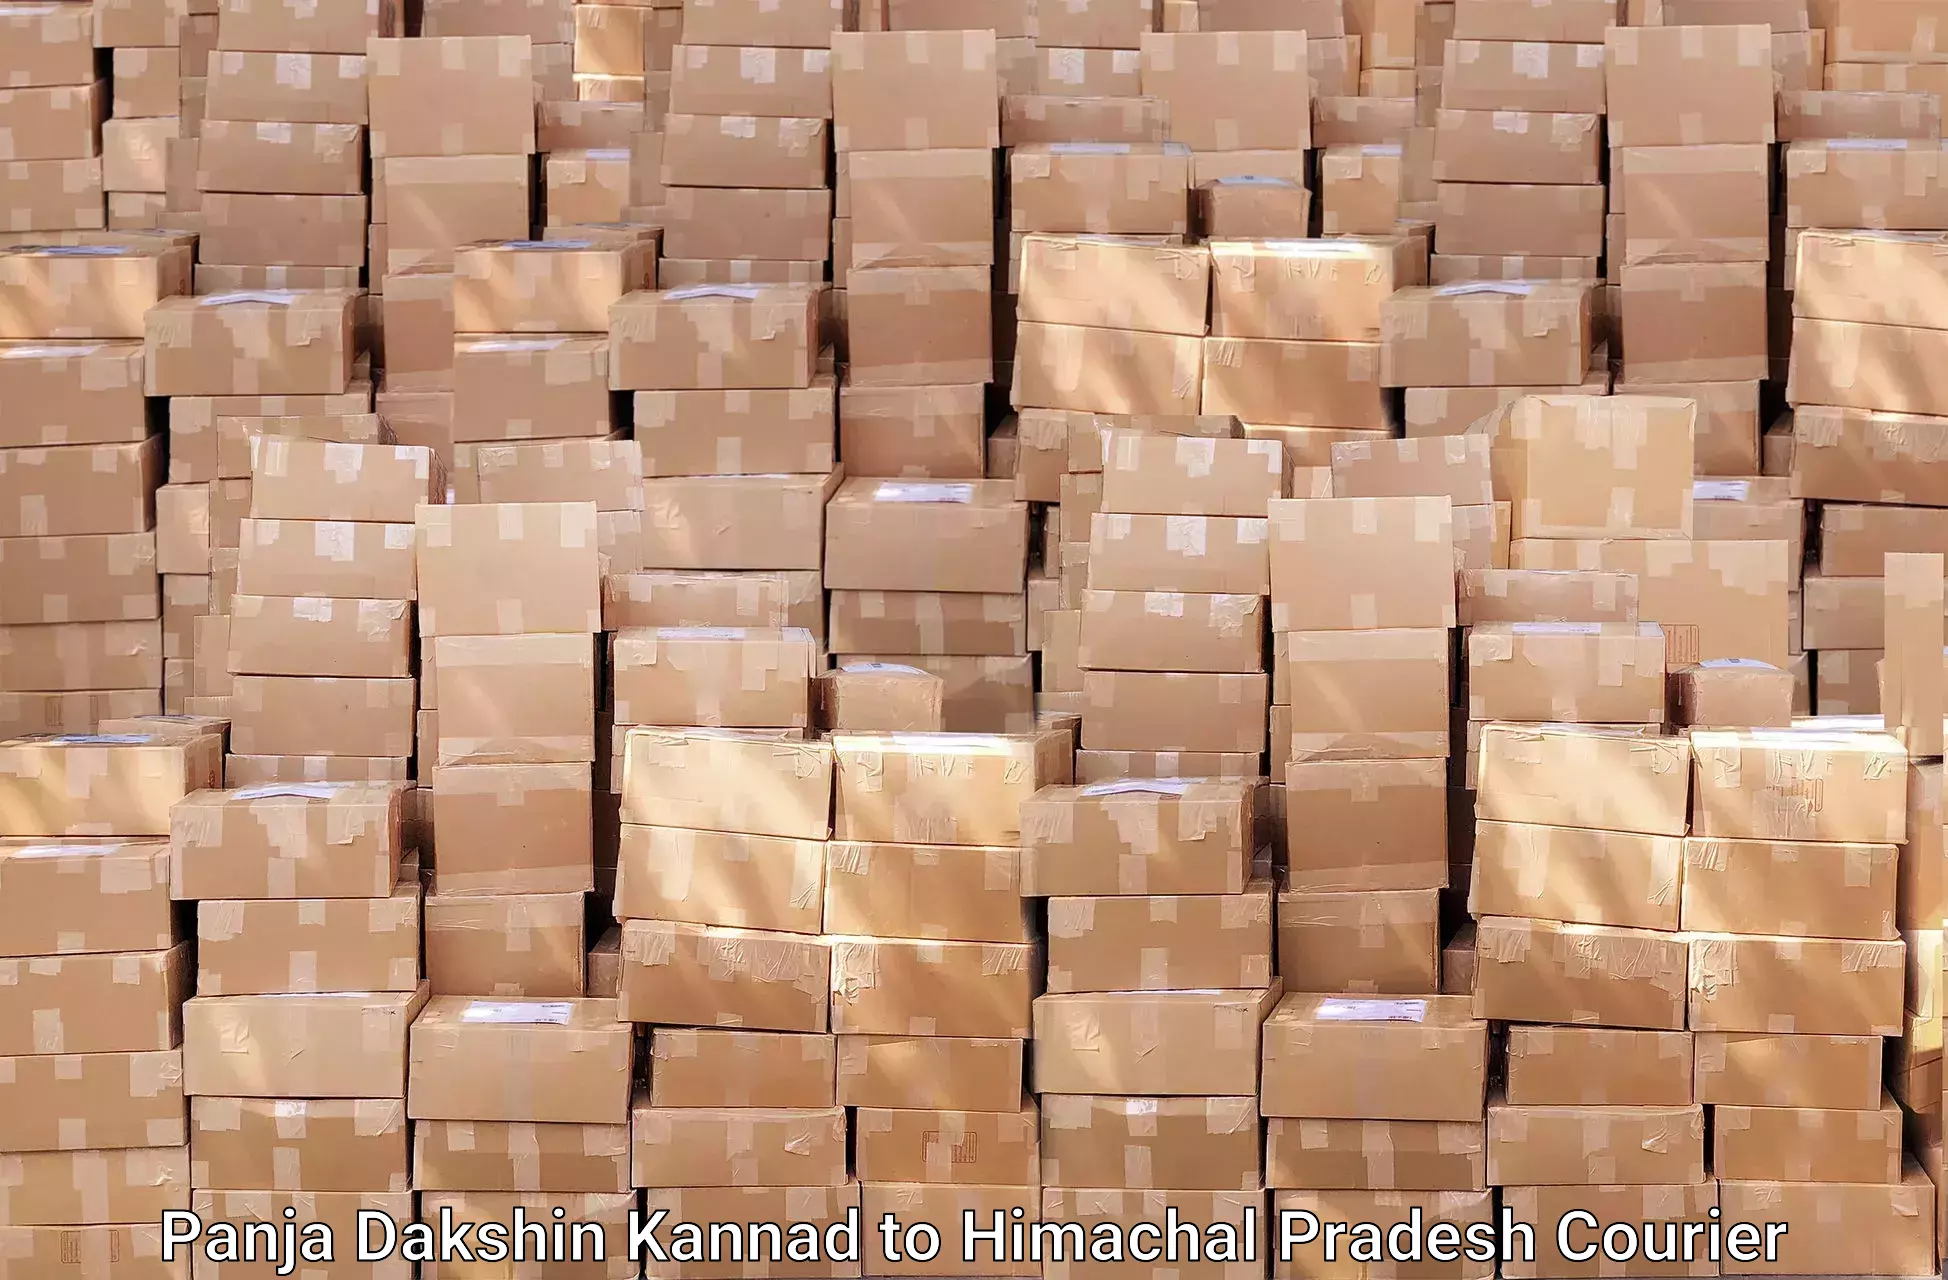 Reliable furniture transport in Panja Dakshin Kannad to Himachal Pradesh